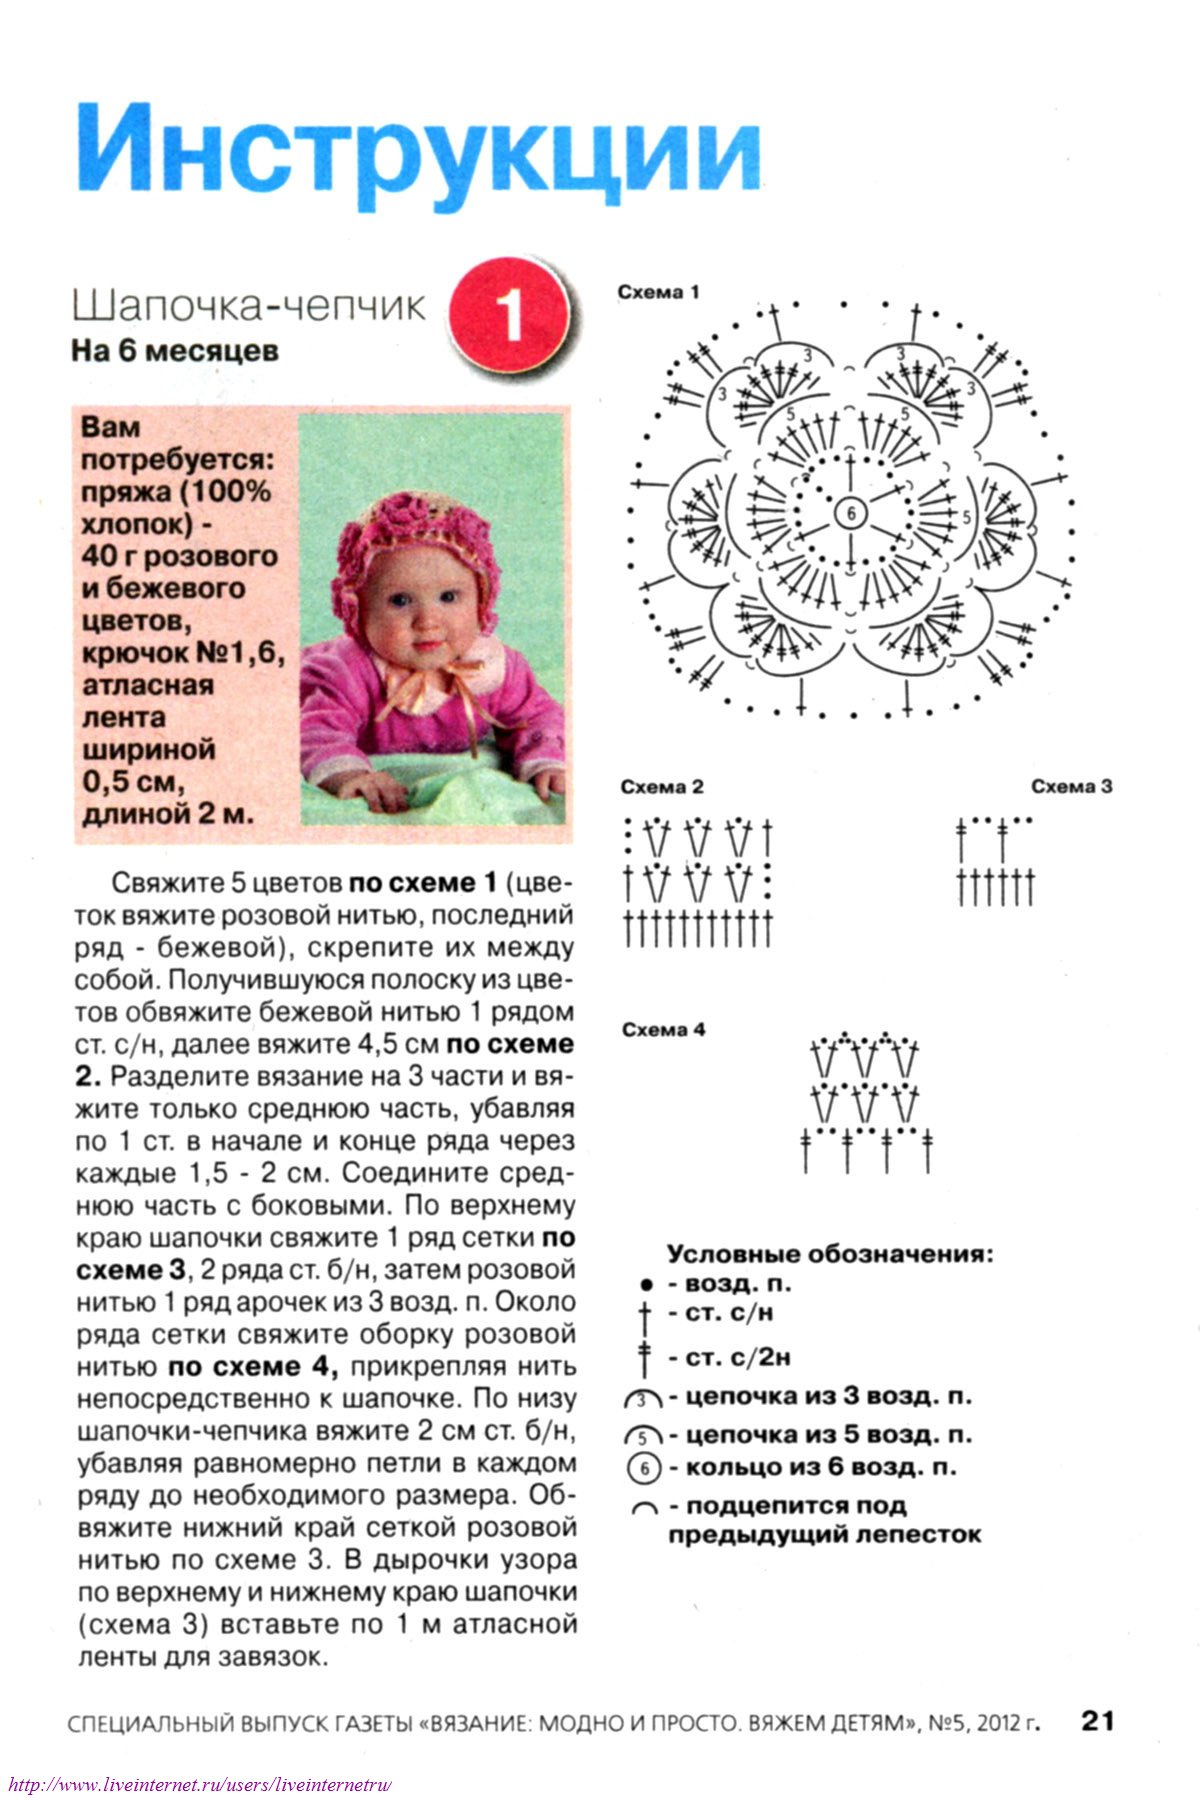 вязание шапочек для детей от 0 до 3 лет с описанием и схемами спицами: фото